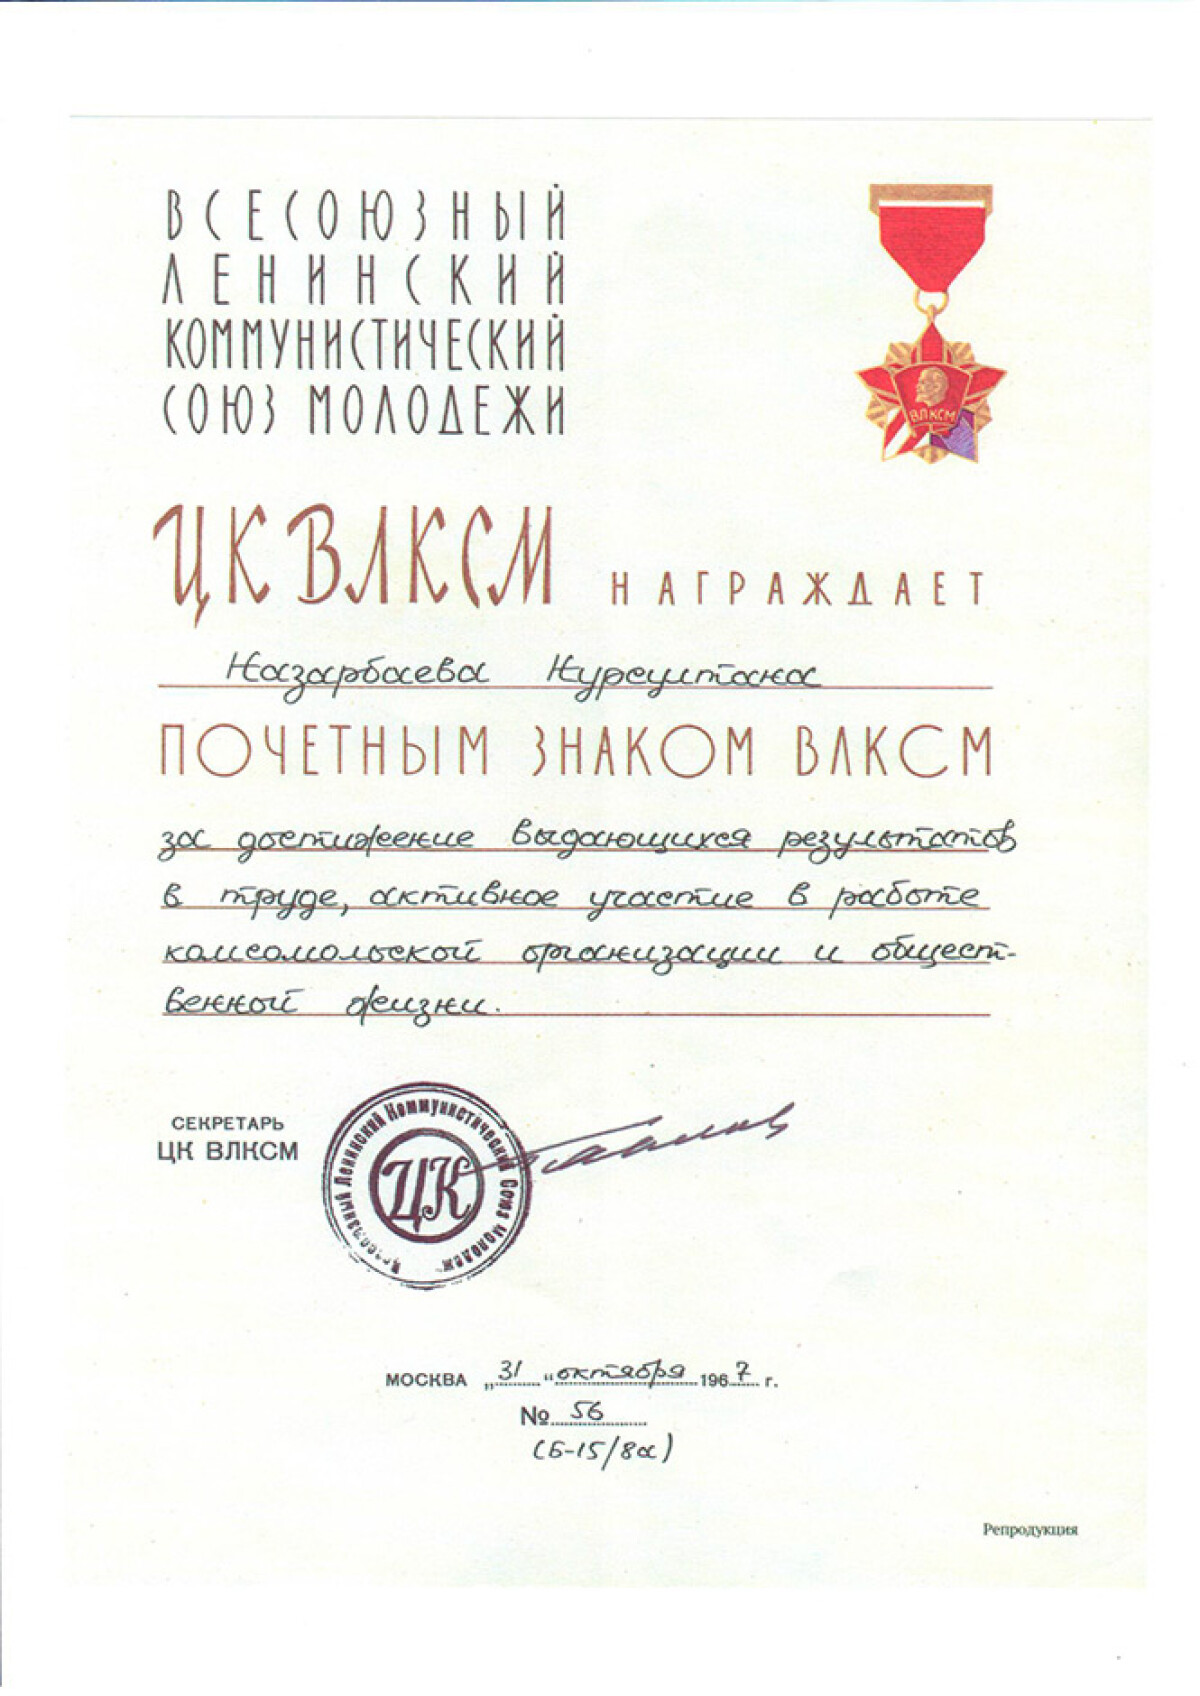 Diploma awarding Honorary Komsomol - e-history.kz